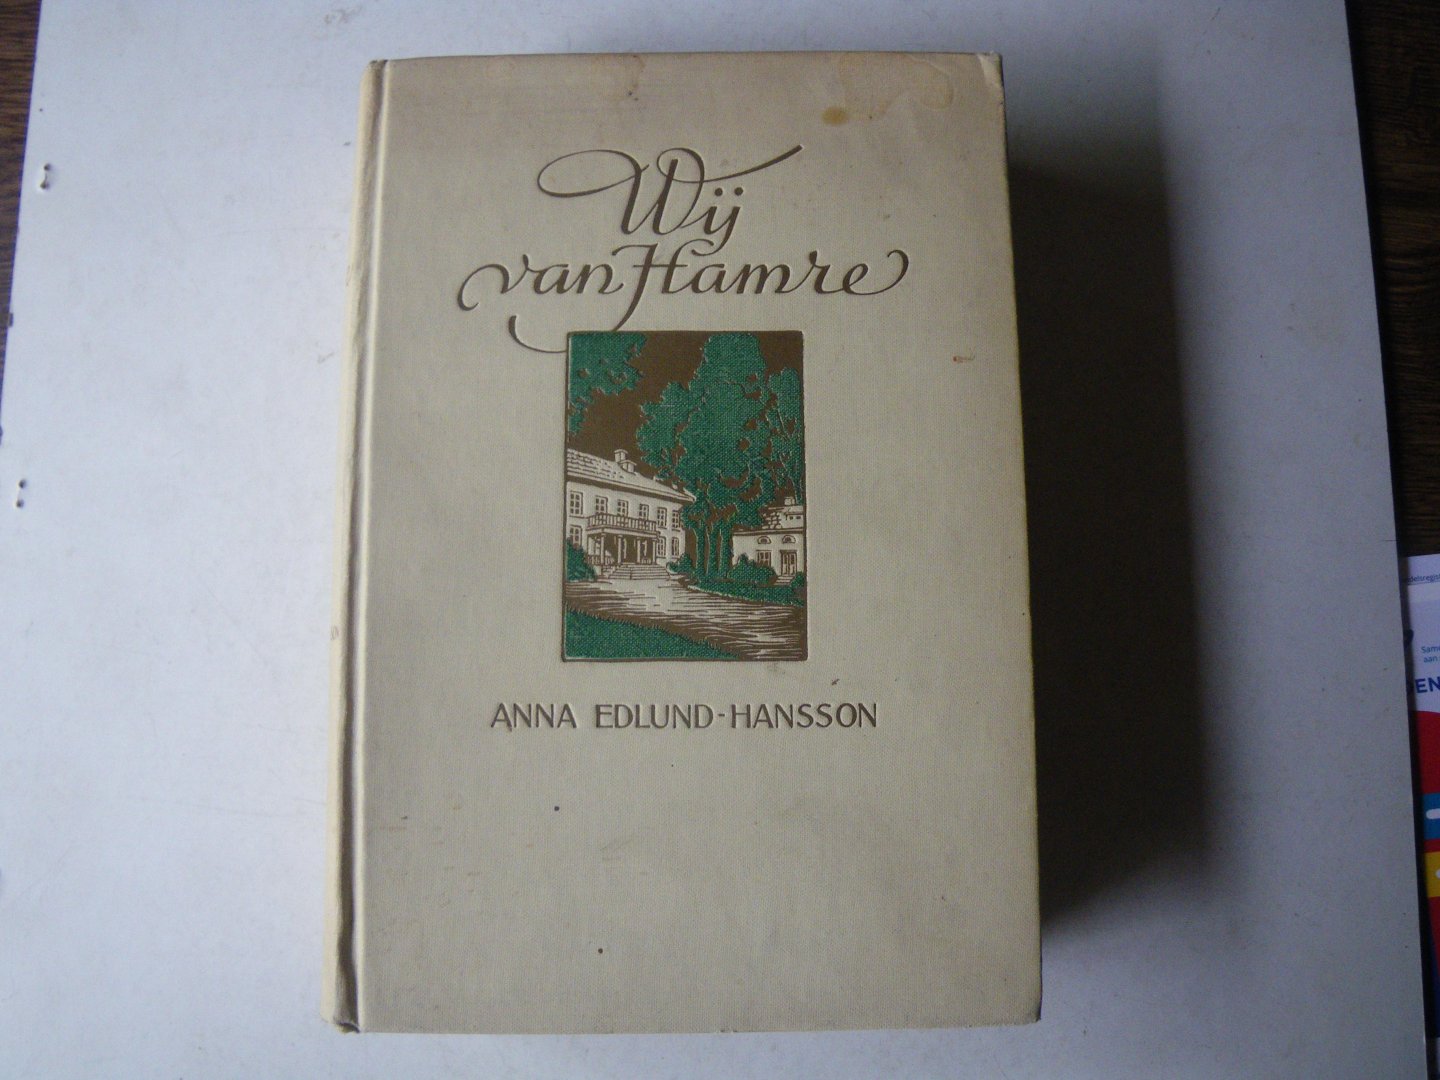 EDLUND-HANSSON, ANNA, - Wij van Hamre. Een kroniekenboek, uit het Zweedsch vertaald door N. Basenau-Goemans